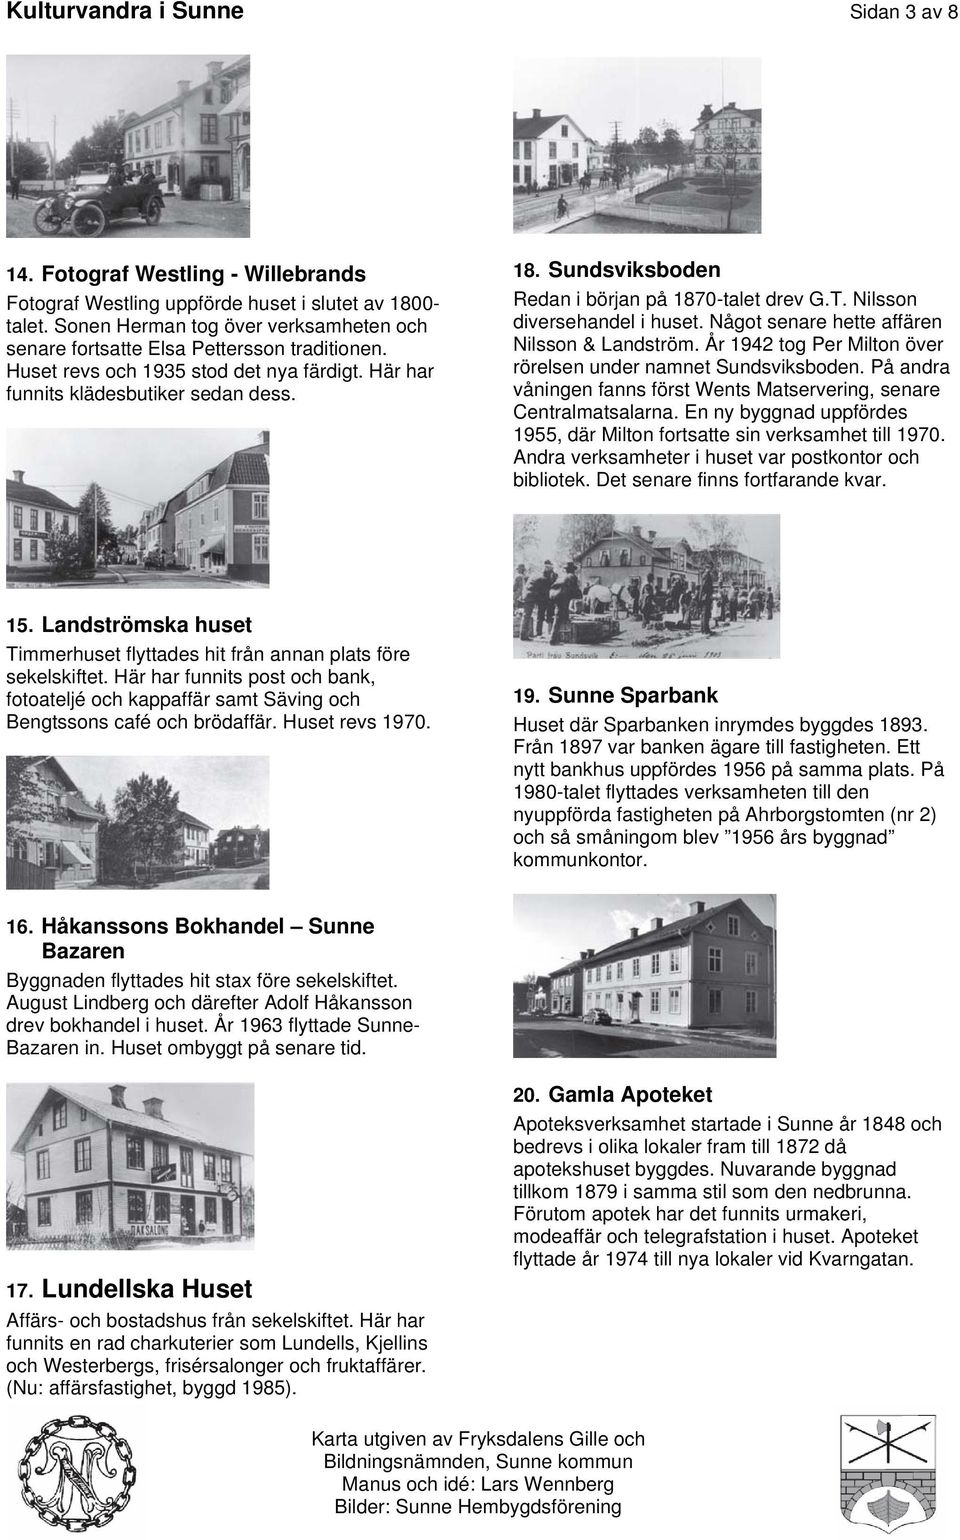 Sundsviksboden Redan i början på 1870-talet drev G.T. Nilsson diversehandel i huset. Något senare hette affären Nilsson & Landström. År 1942 tog Per Milton över rörelsen under namnet Sundsviksboden.